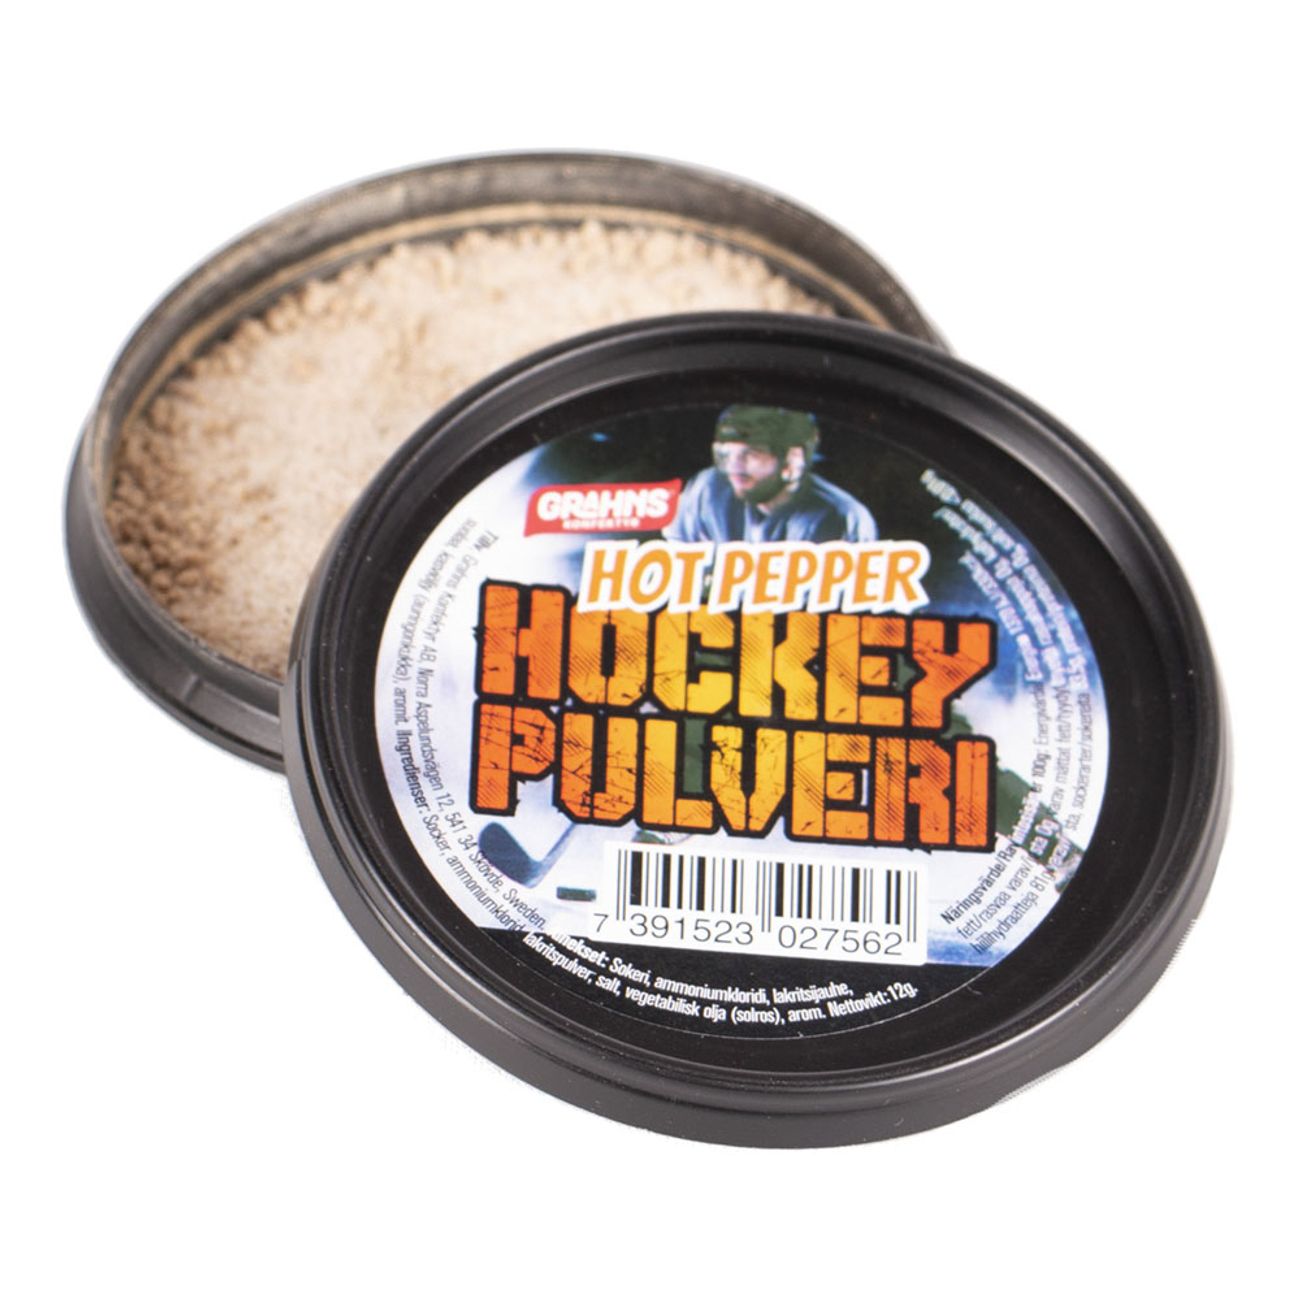 hockeypulver-hot-pepper-77992-2